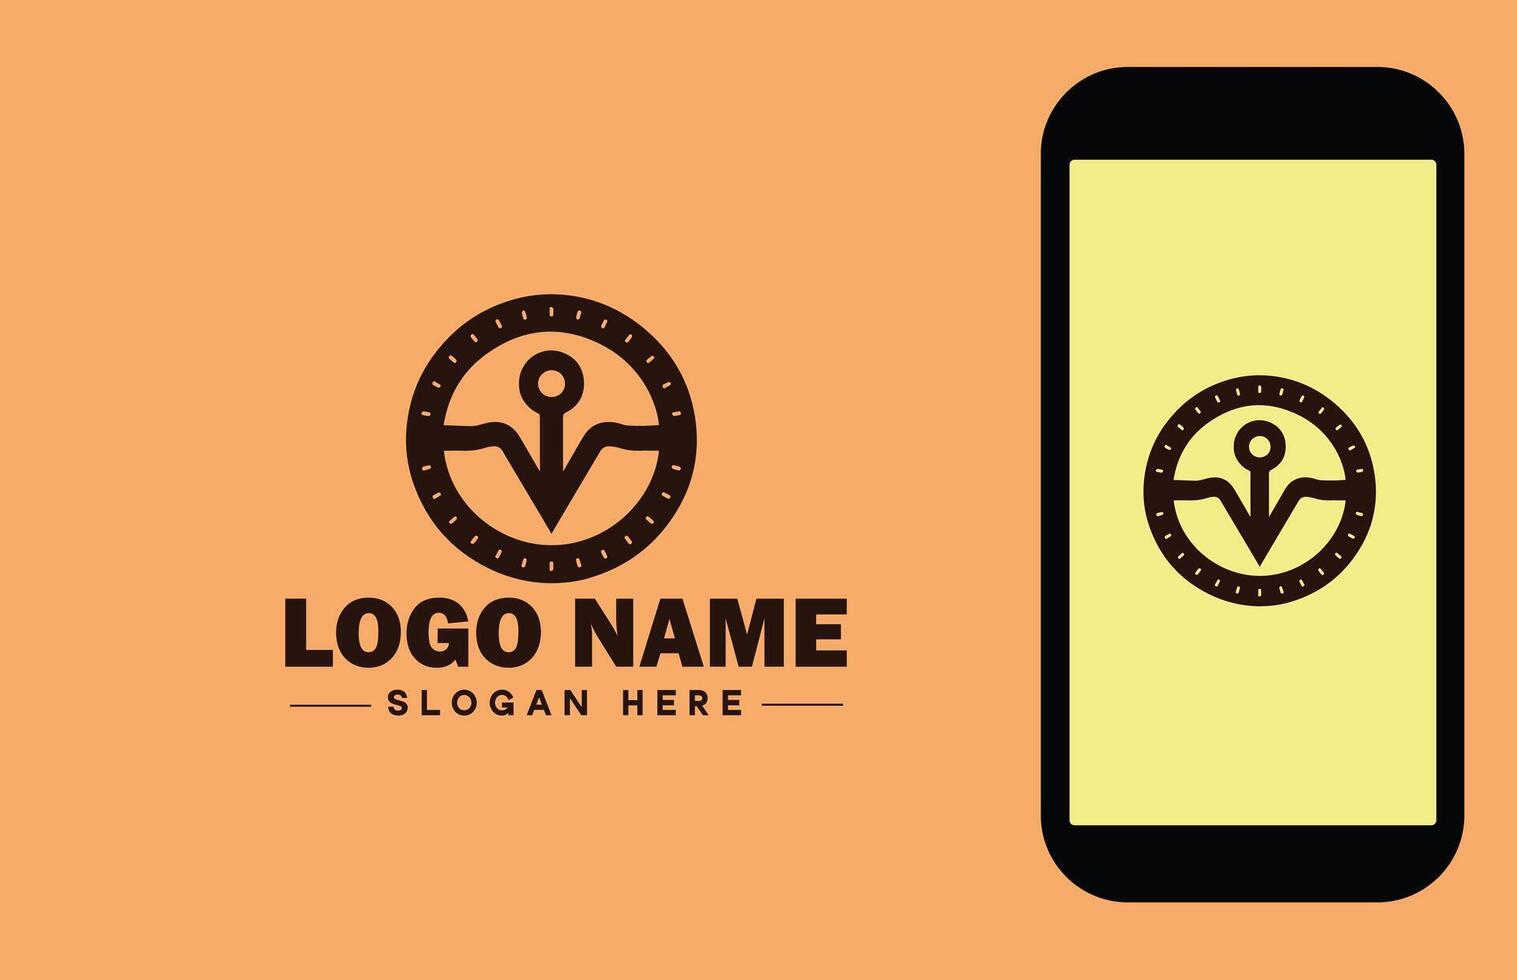 coche logo icône vecteur art graphique pour affaires marque app icône vérifier marque droite symbole cocher D'accord correct logo modèle